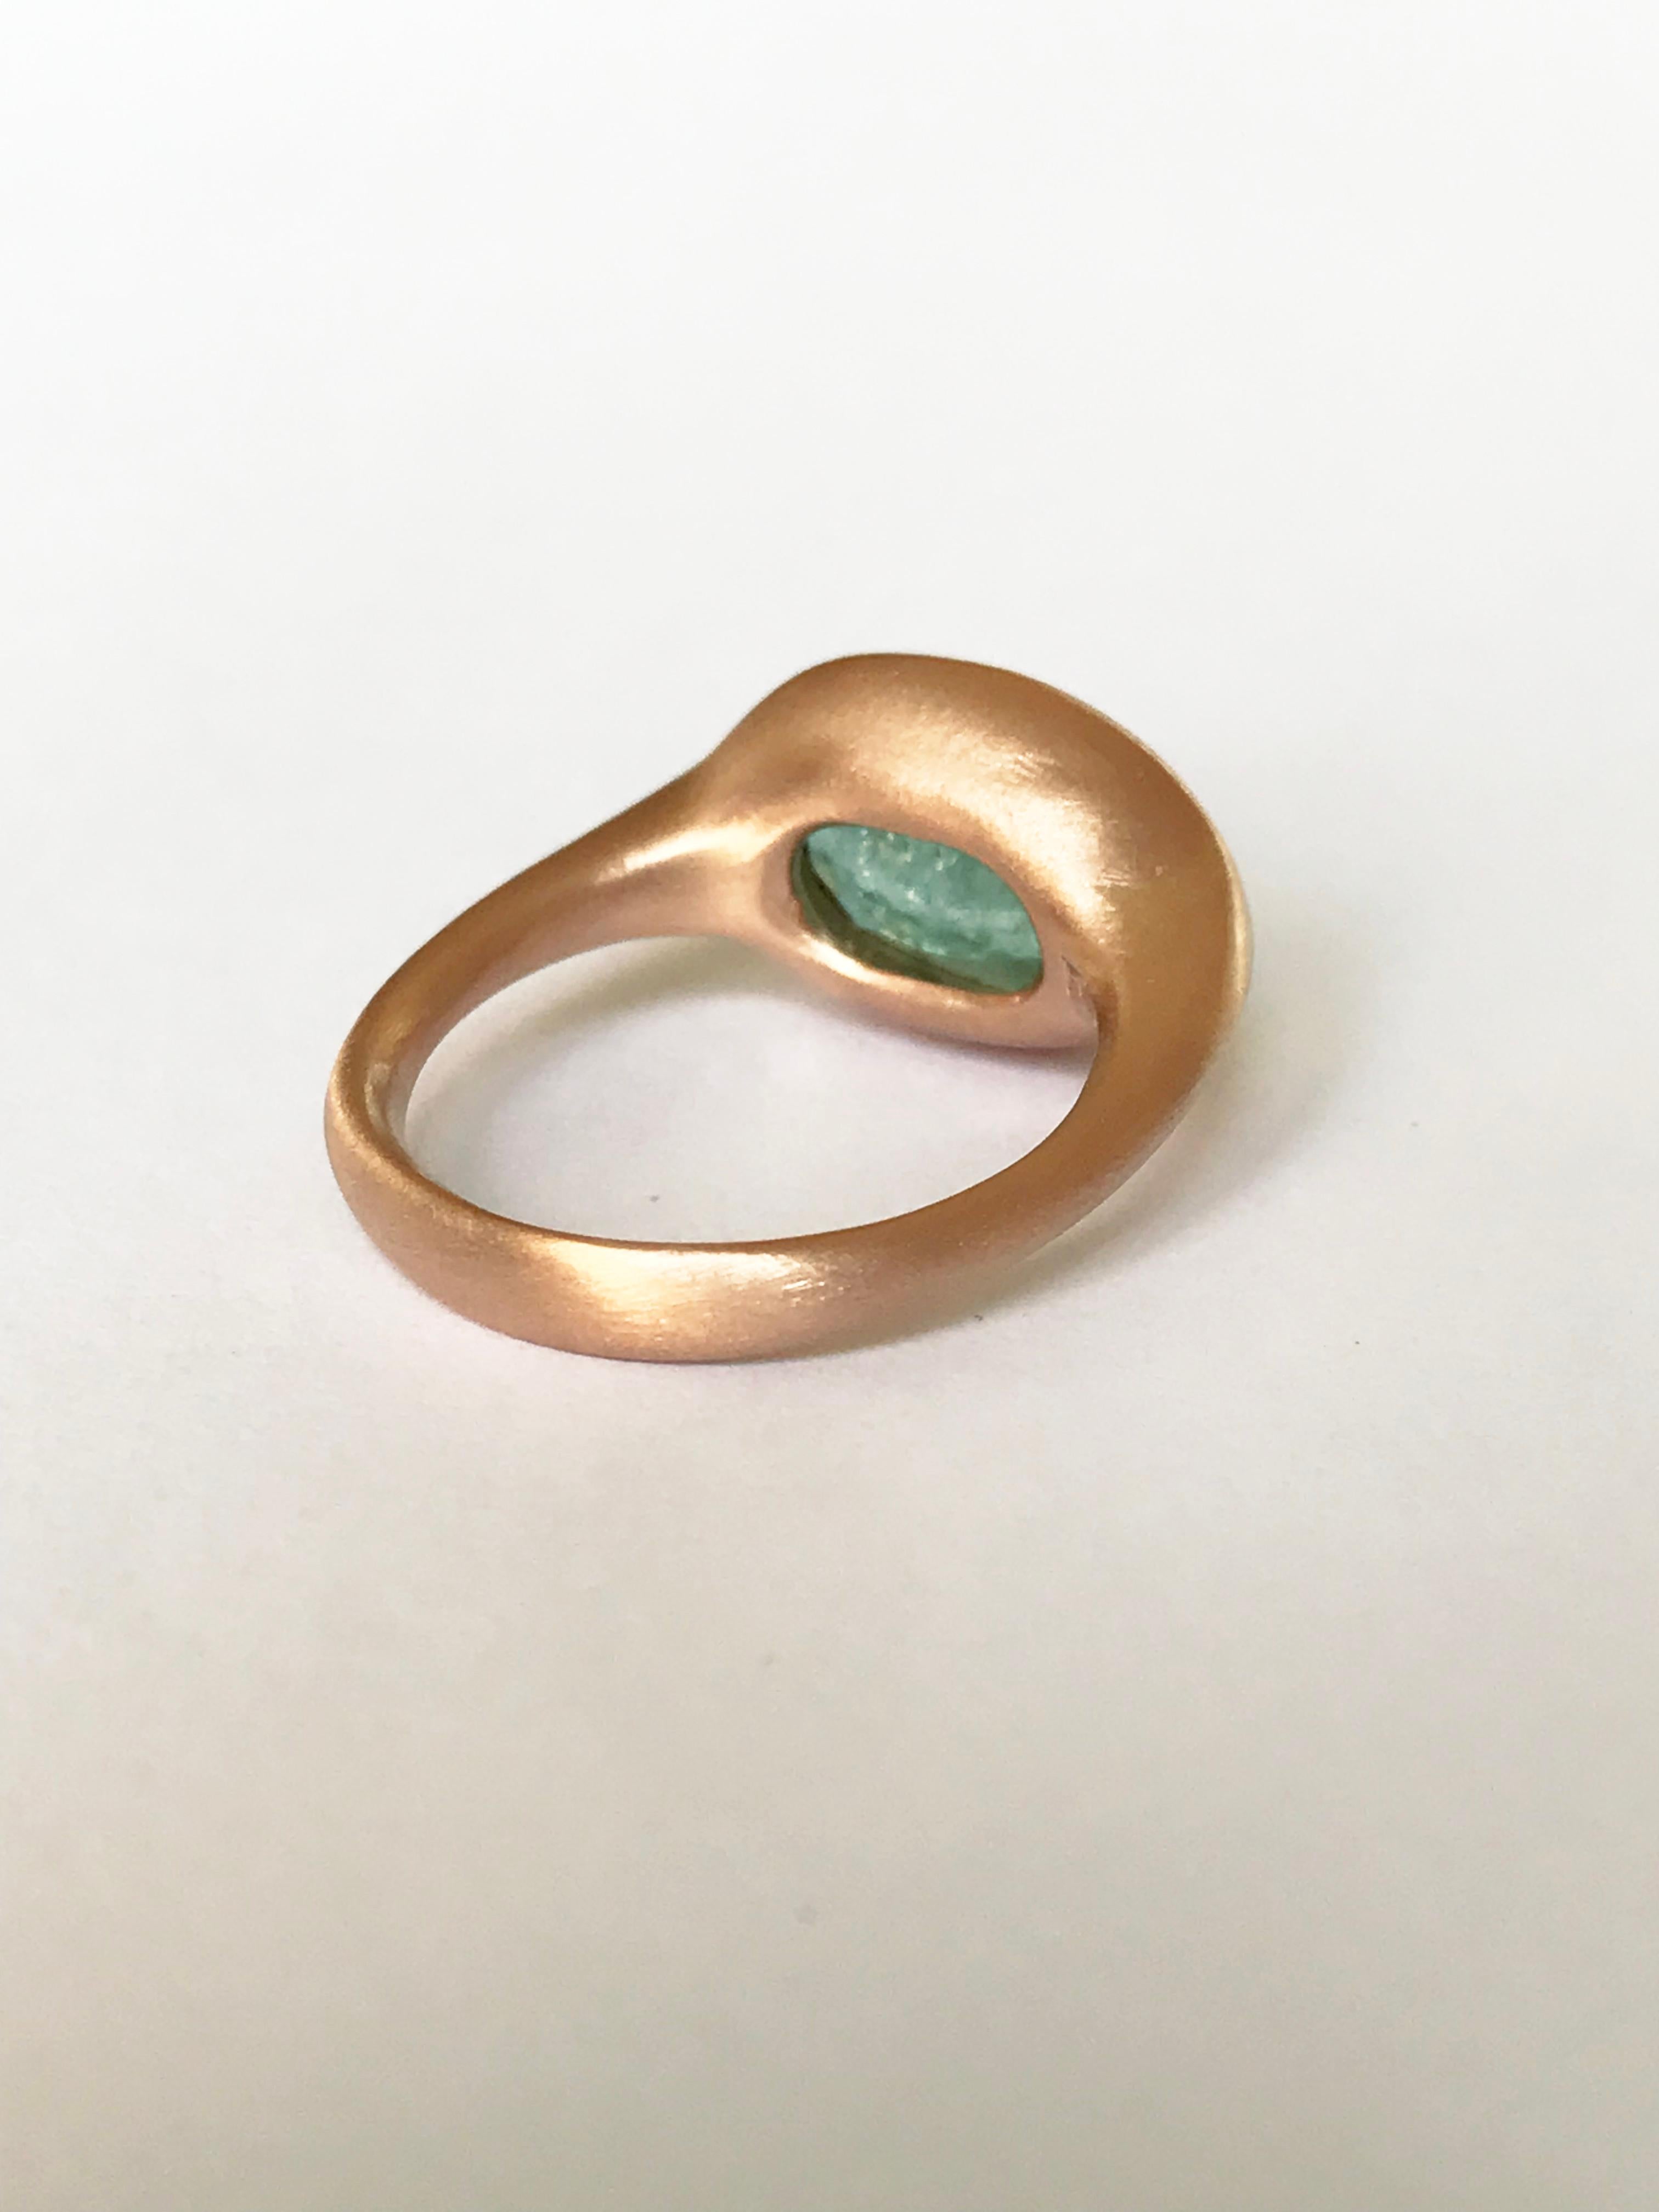 Dalben Design 3.79 carat Paraiba Tourmaline Rose Gold Ring For Sale 6